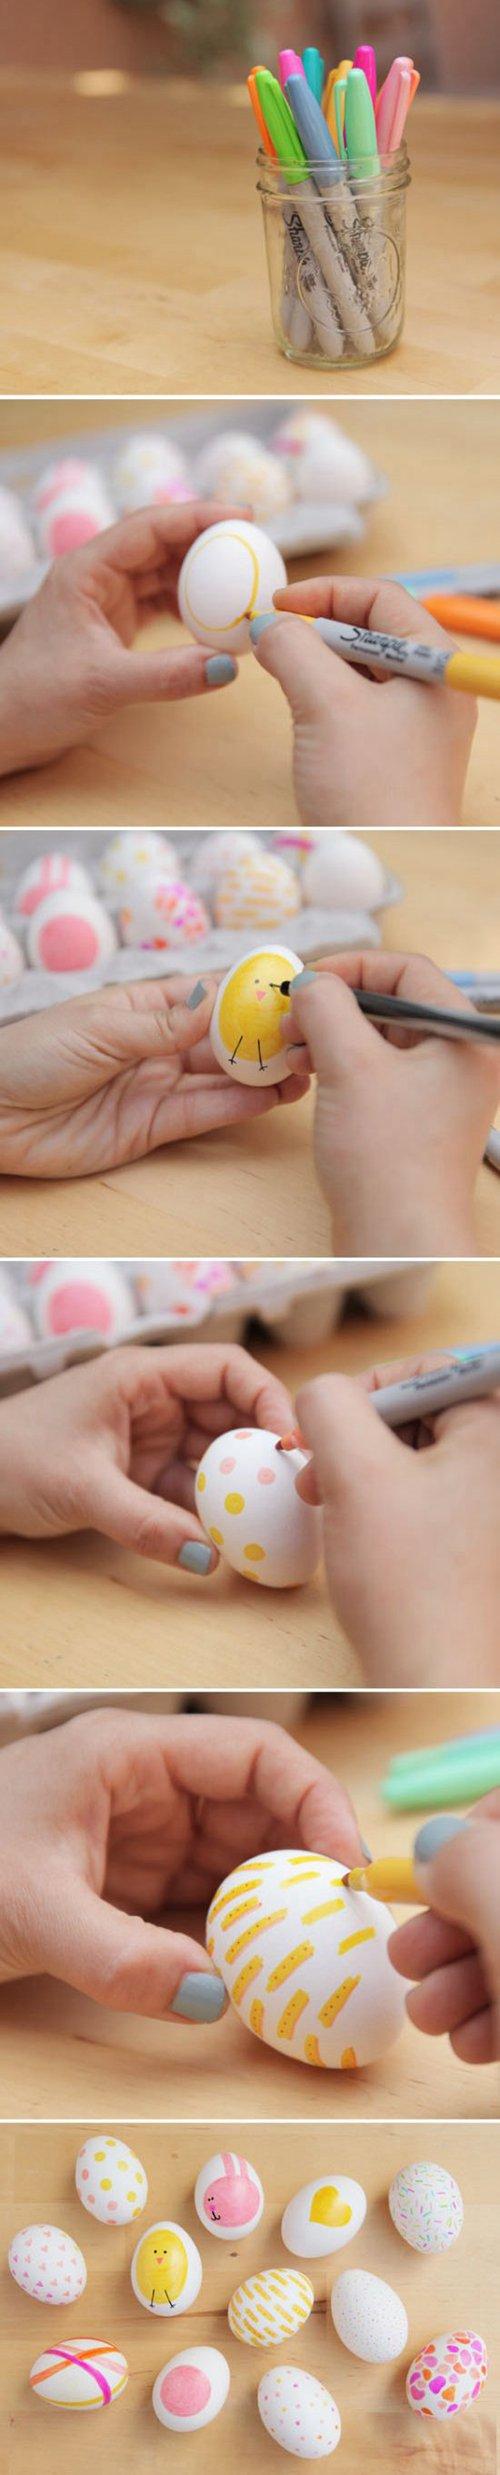 这组鸡蛋绘画作品就是利用普通的鸡蛋和水彩笔进行的.